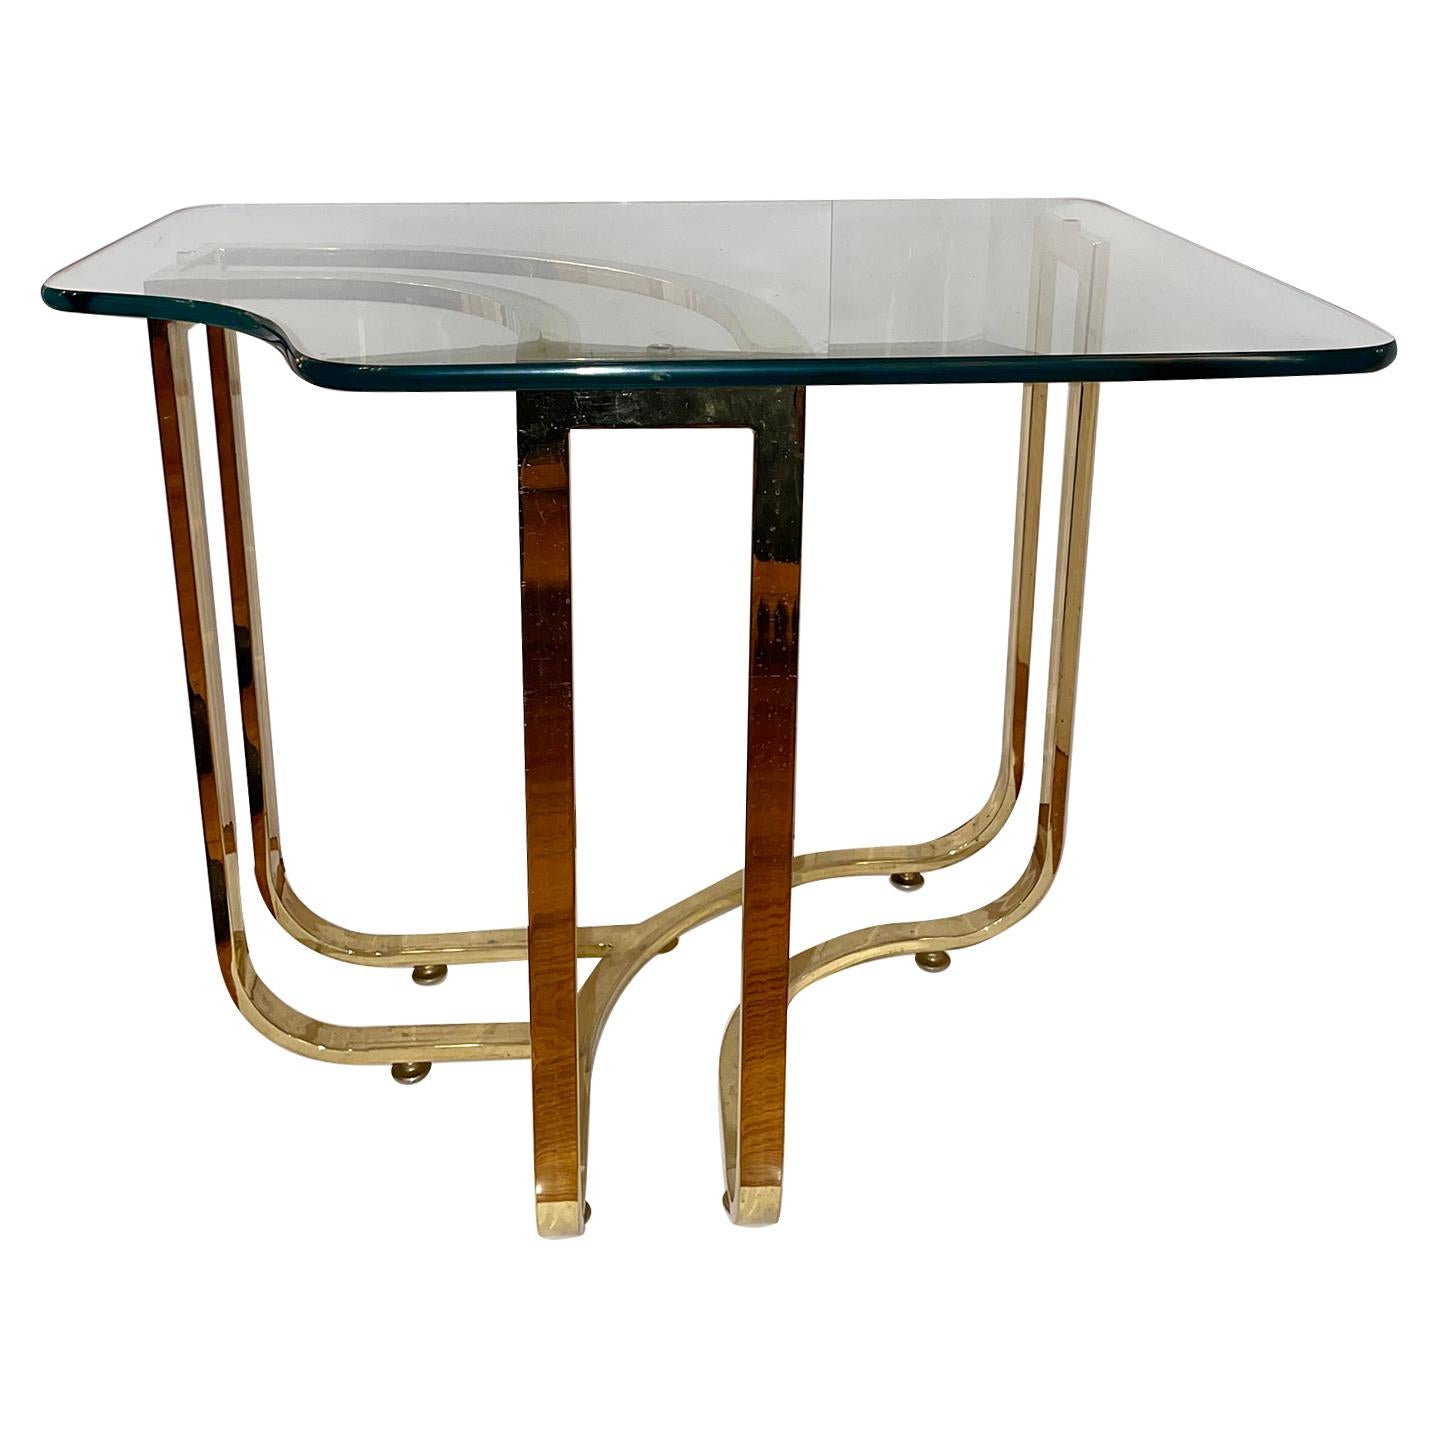 Paire de tables d'appoint italiennes de style Moderne, circa 1960, avec plateaux en verre.

Mesures :
Hauteur : 23